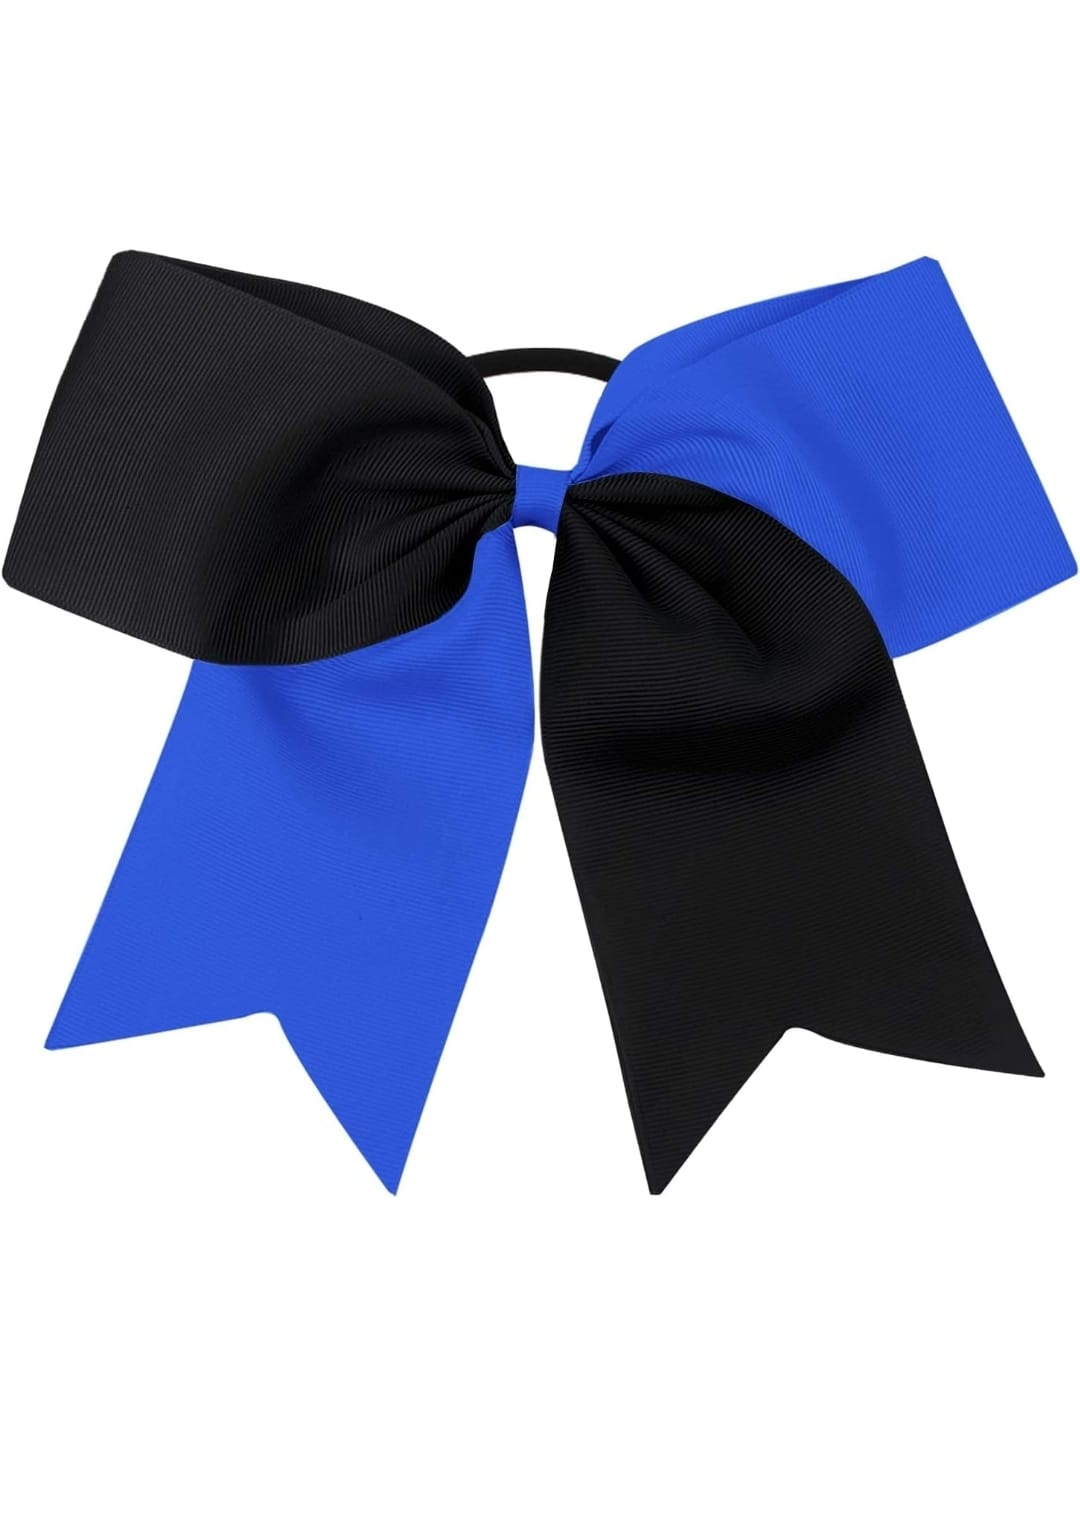 Royal blue and Black Cheer Bow